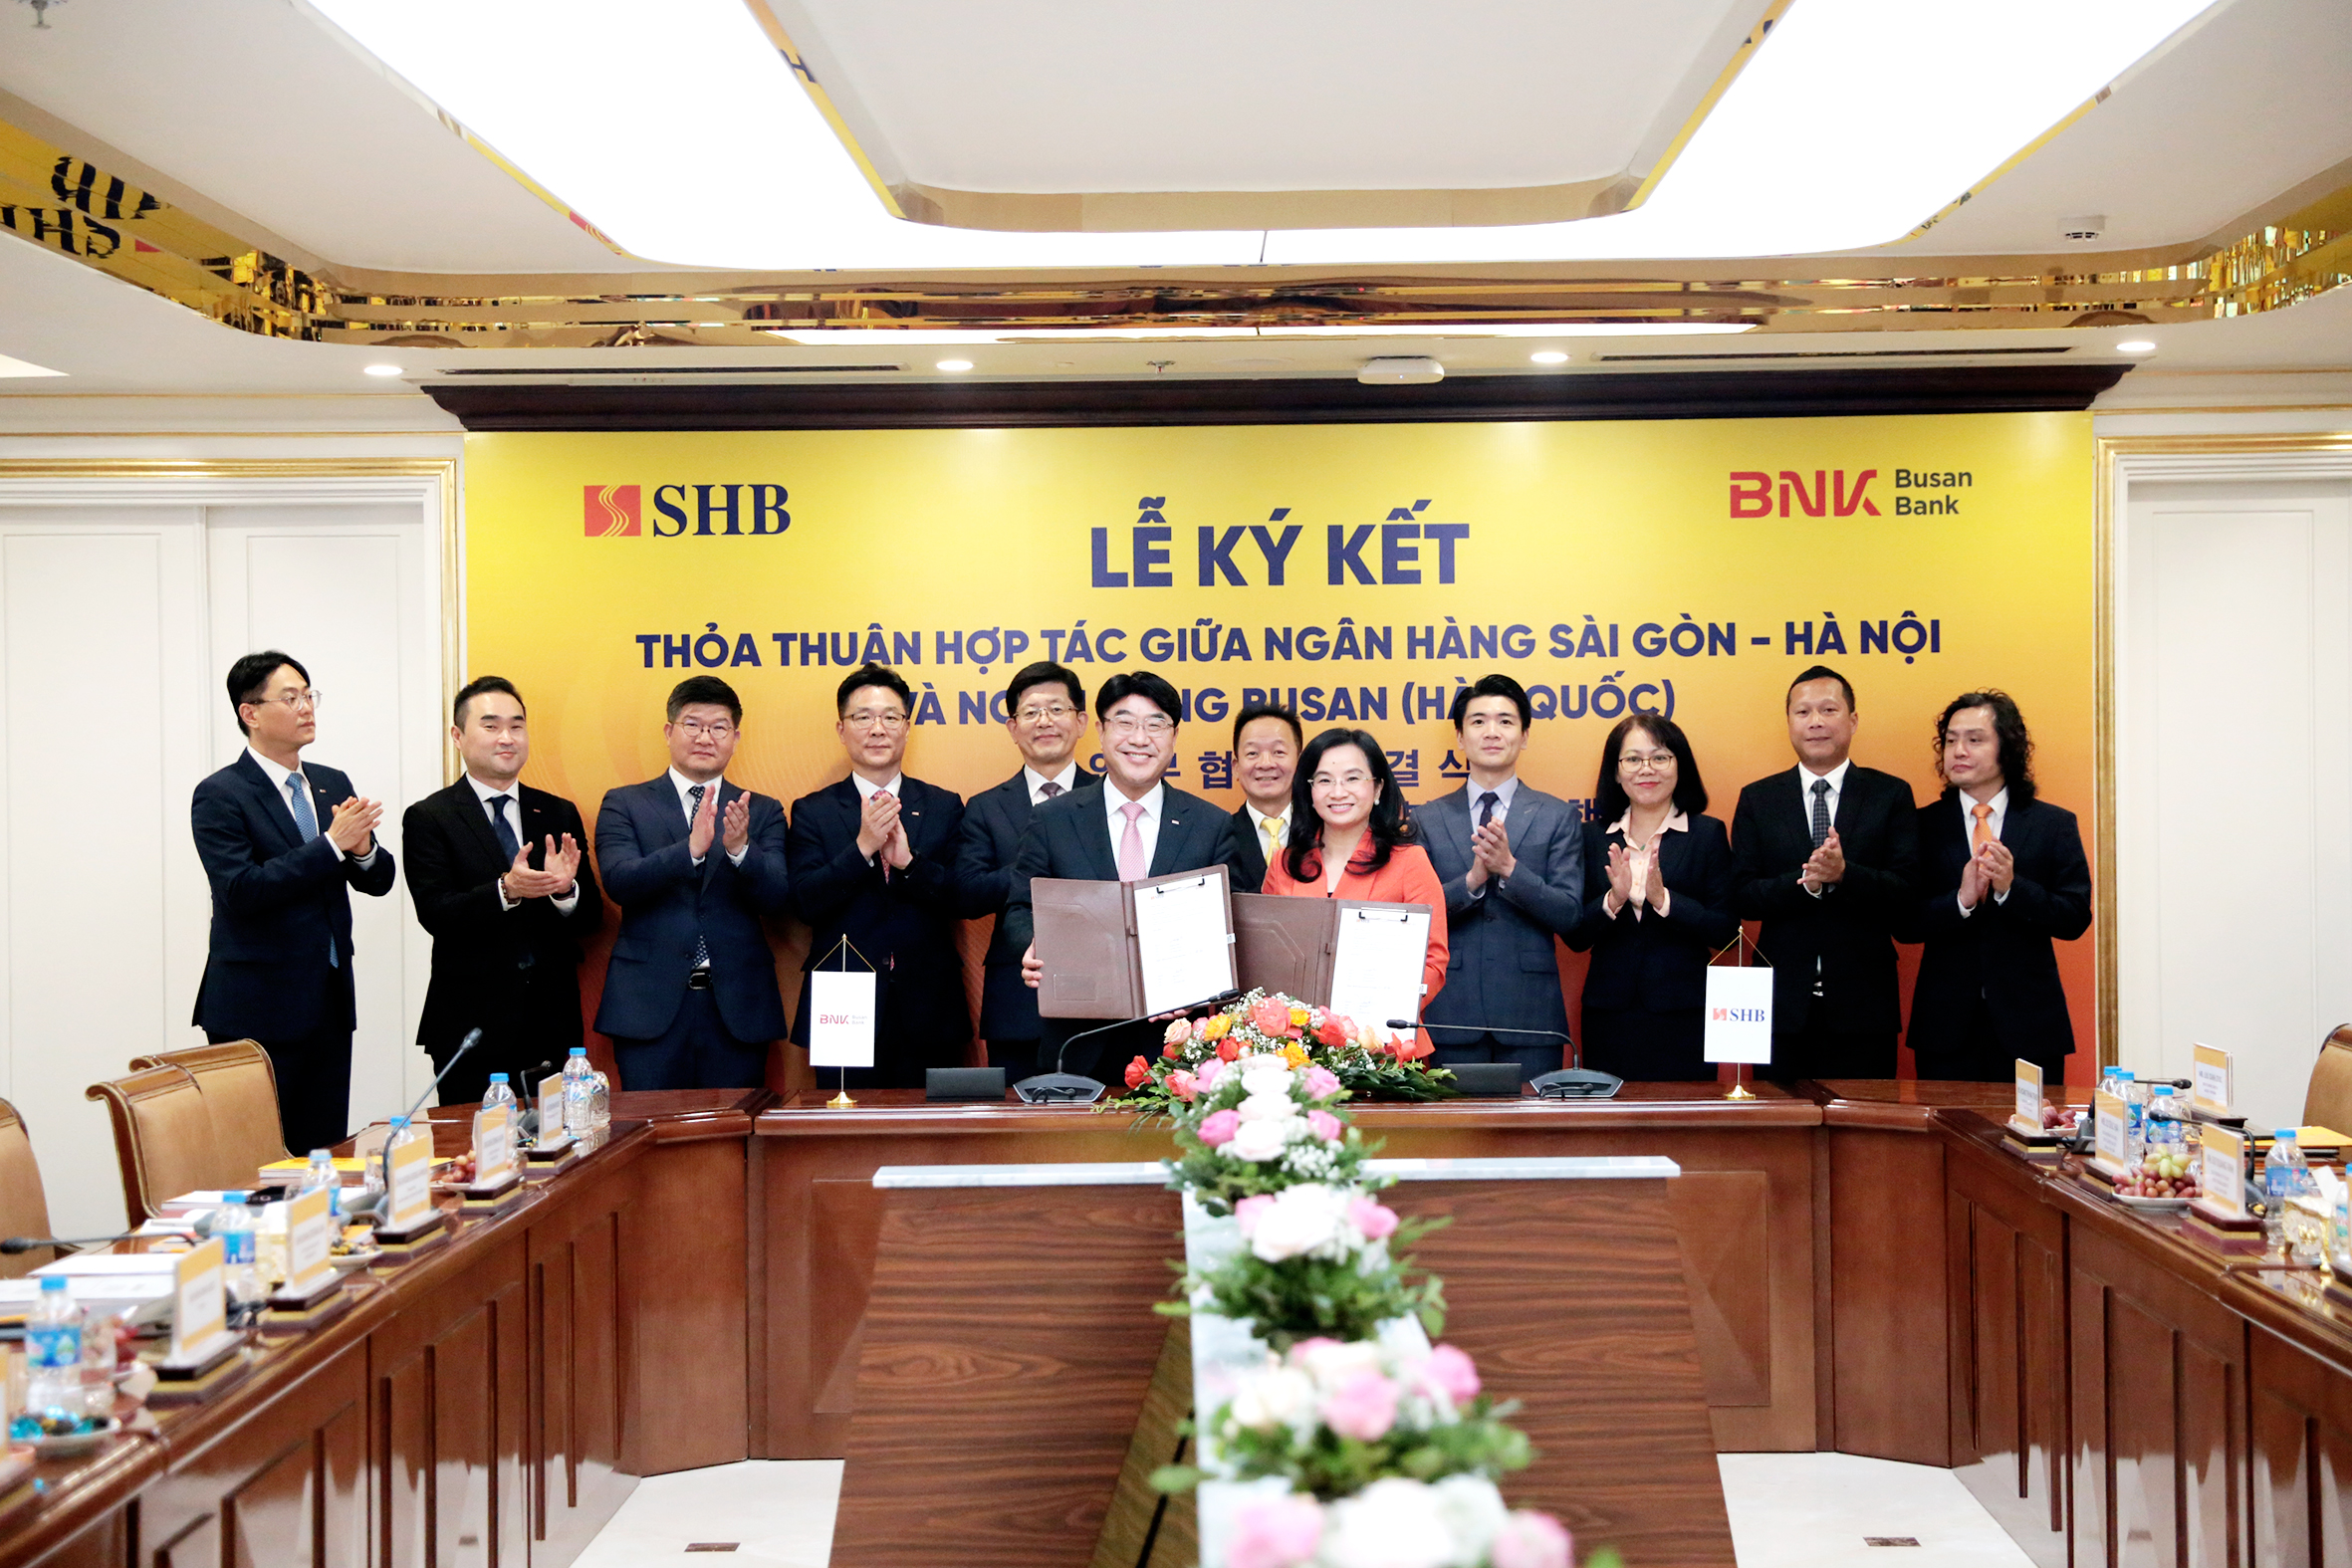  Ông Bang Seong-bin - Chủ tịch Hội đồng quản trị, Tổng Giám đốc Ngân hàng Busan và bà Ngô Thu Hà Tổng Giám đốc SHB trao thỏa thuận hợp tác